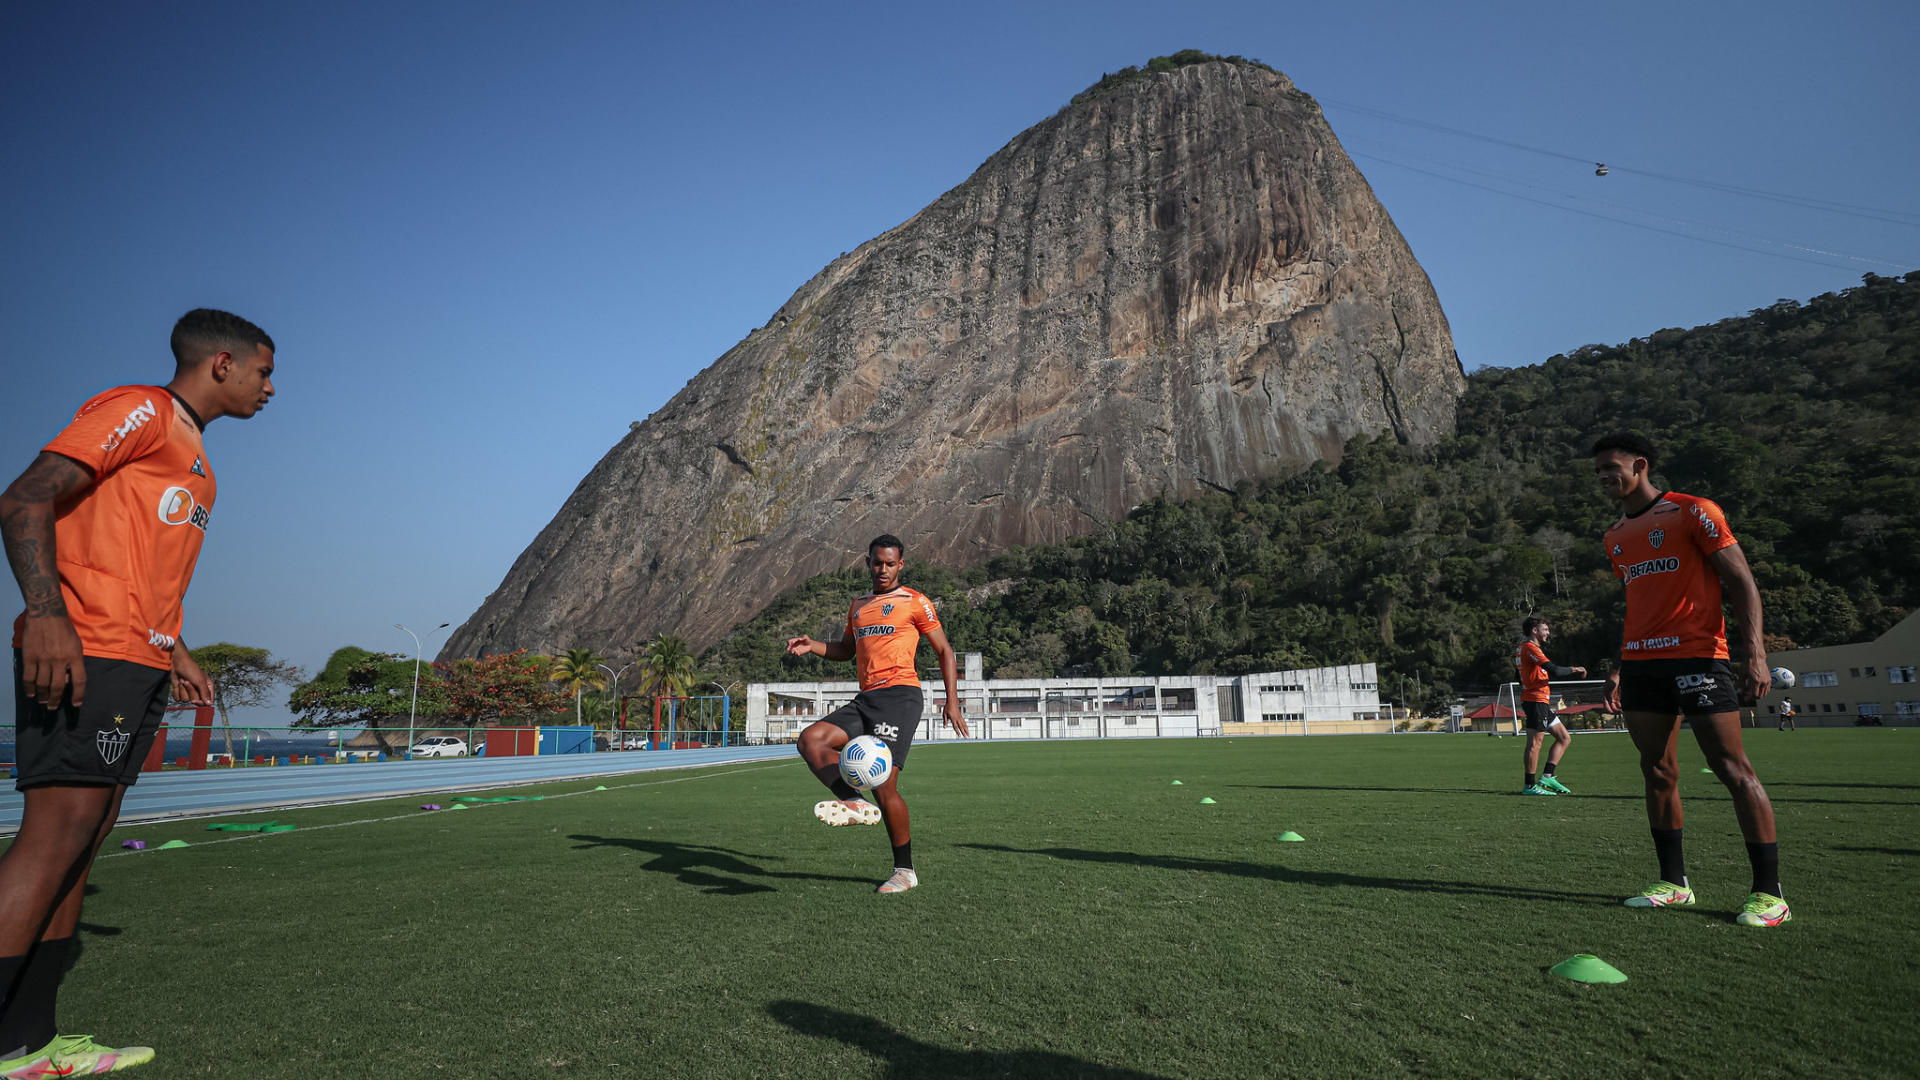 Keno pede clássico entre Atlético-MG e Cruzeiro com tranquilidade